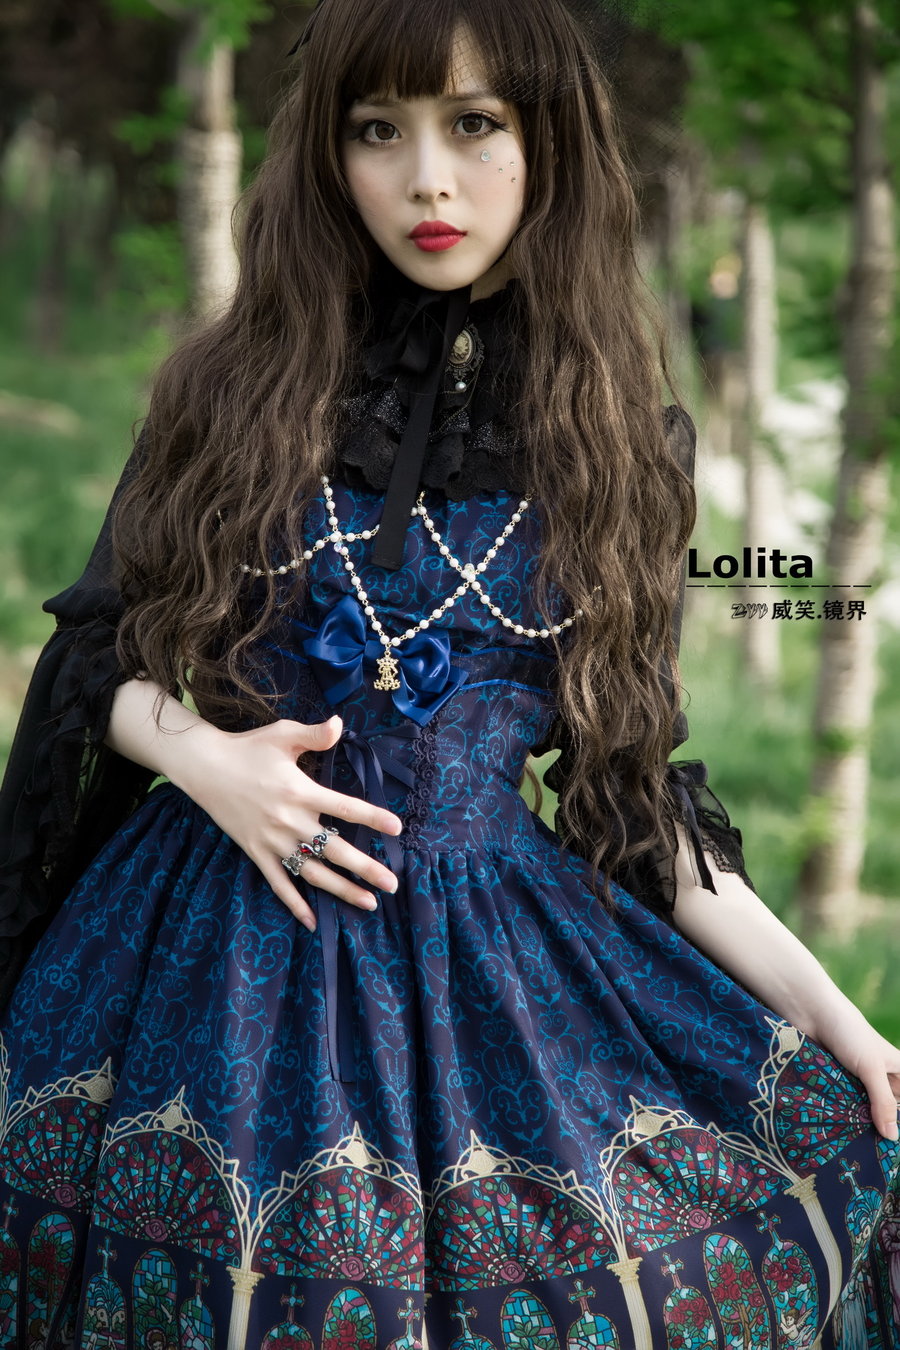 【Lolita摄影图片】保定市人像摄影